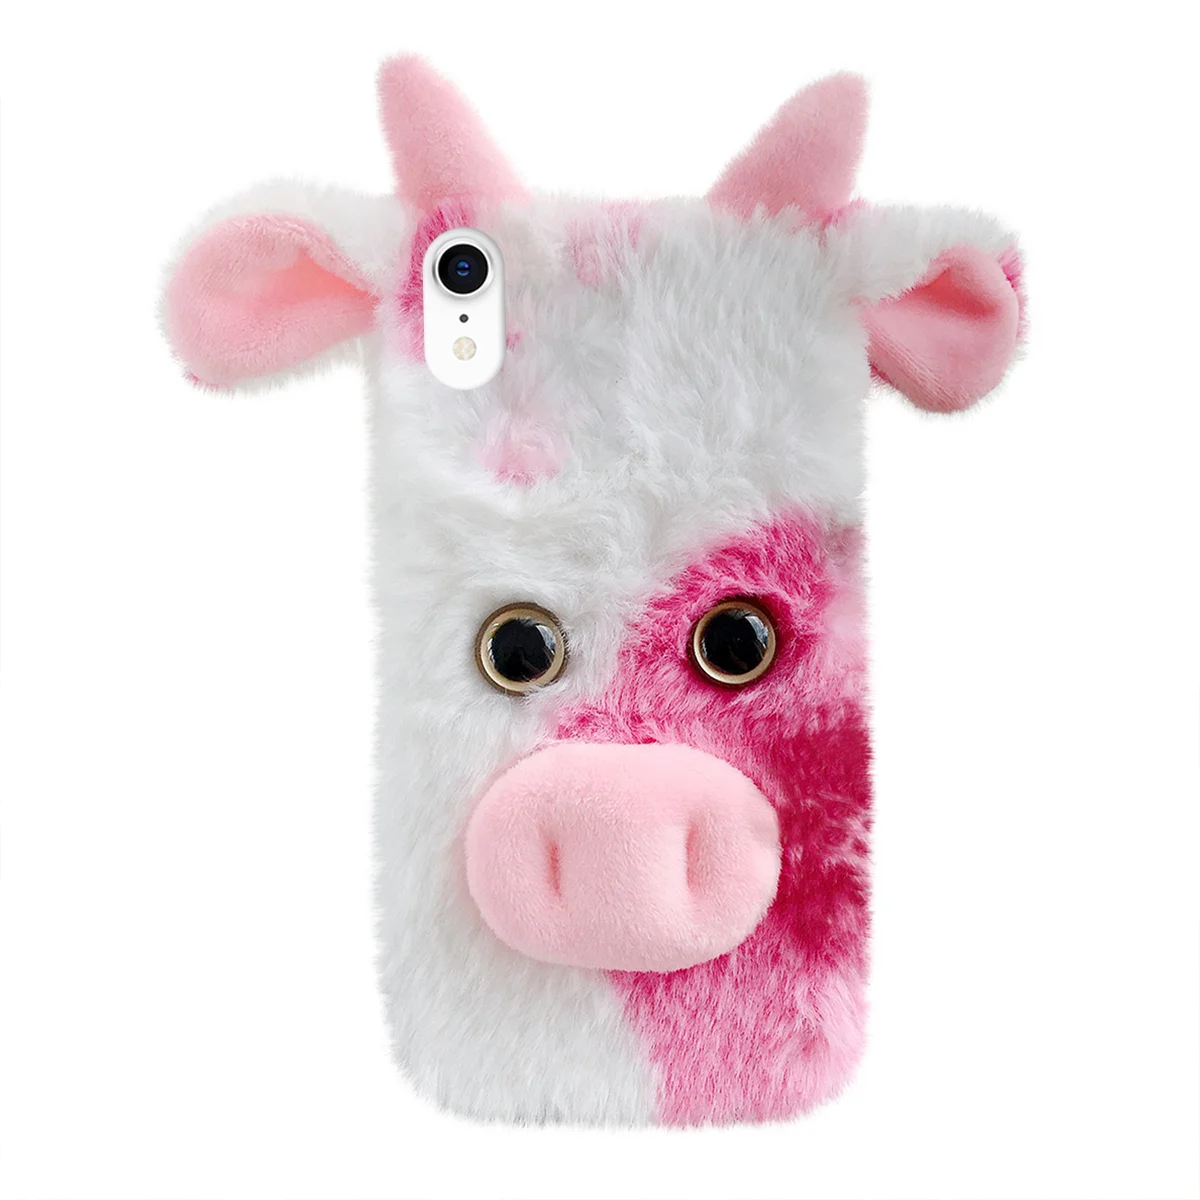 

Kлеверкейс мультяшный защитный чехол для мобильного телефона пушистый телефон милый защитный чехол для коровы